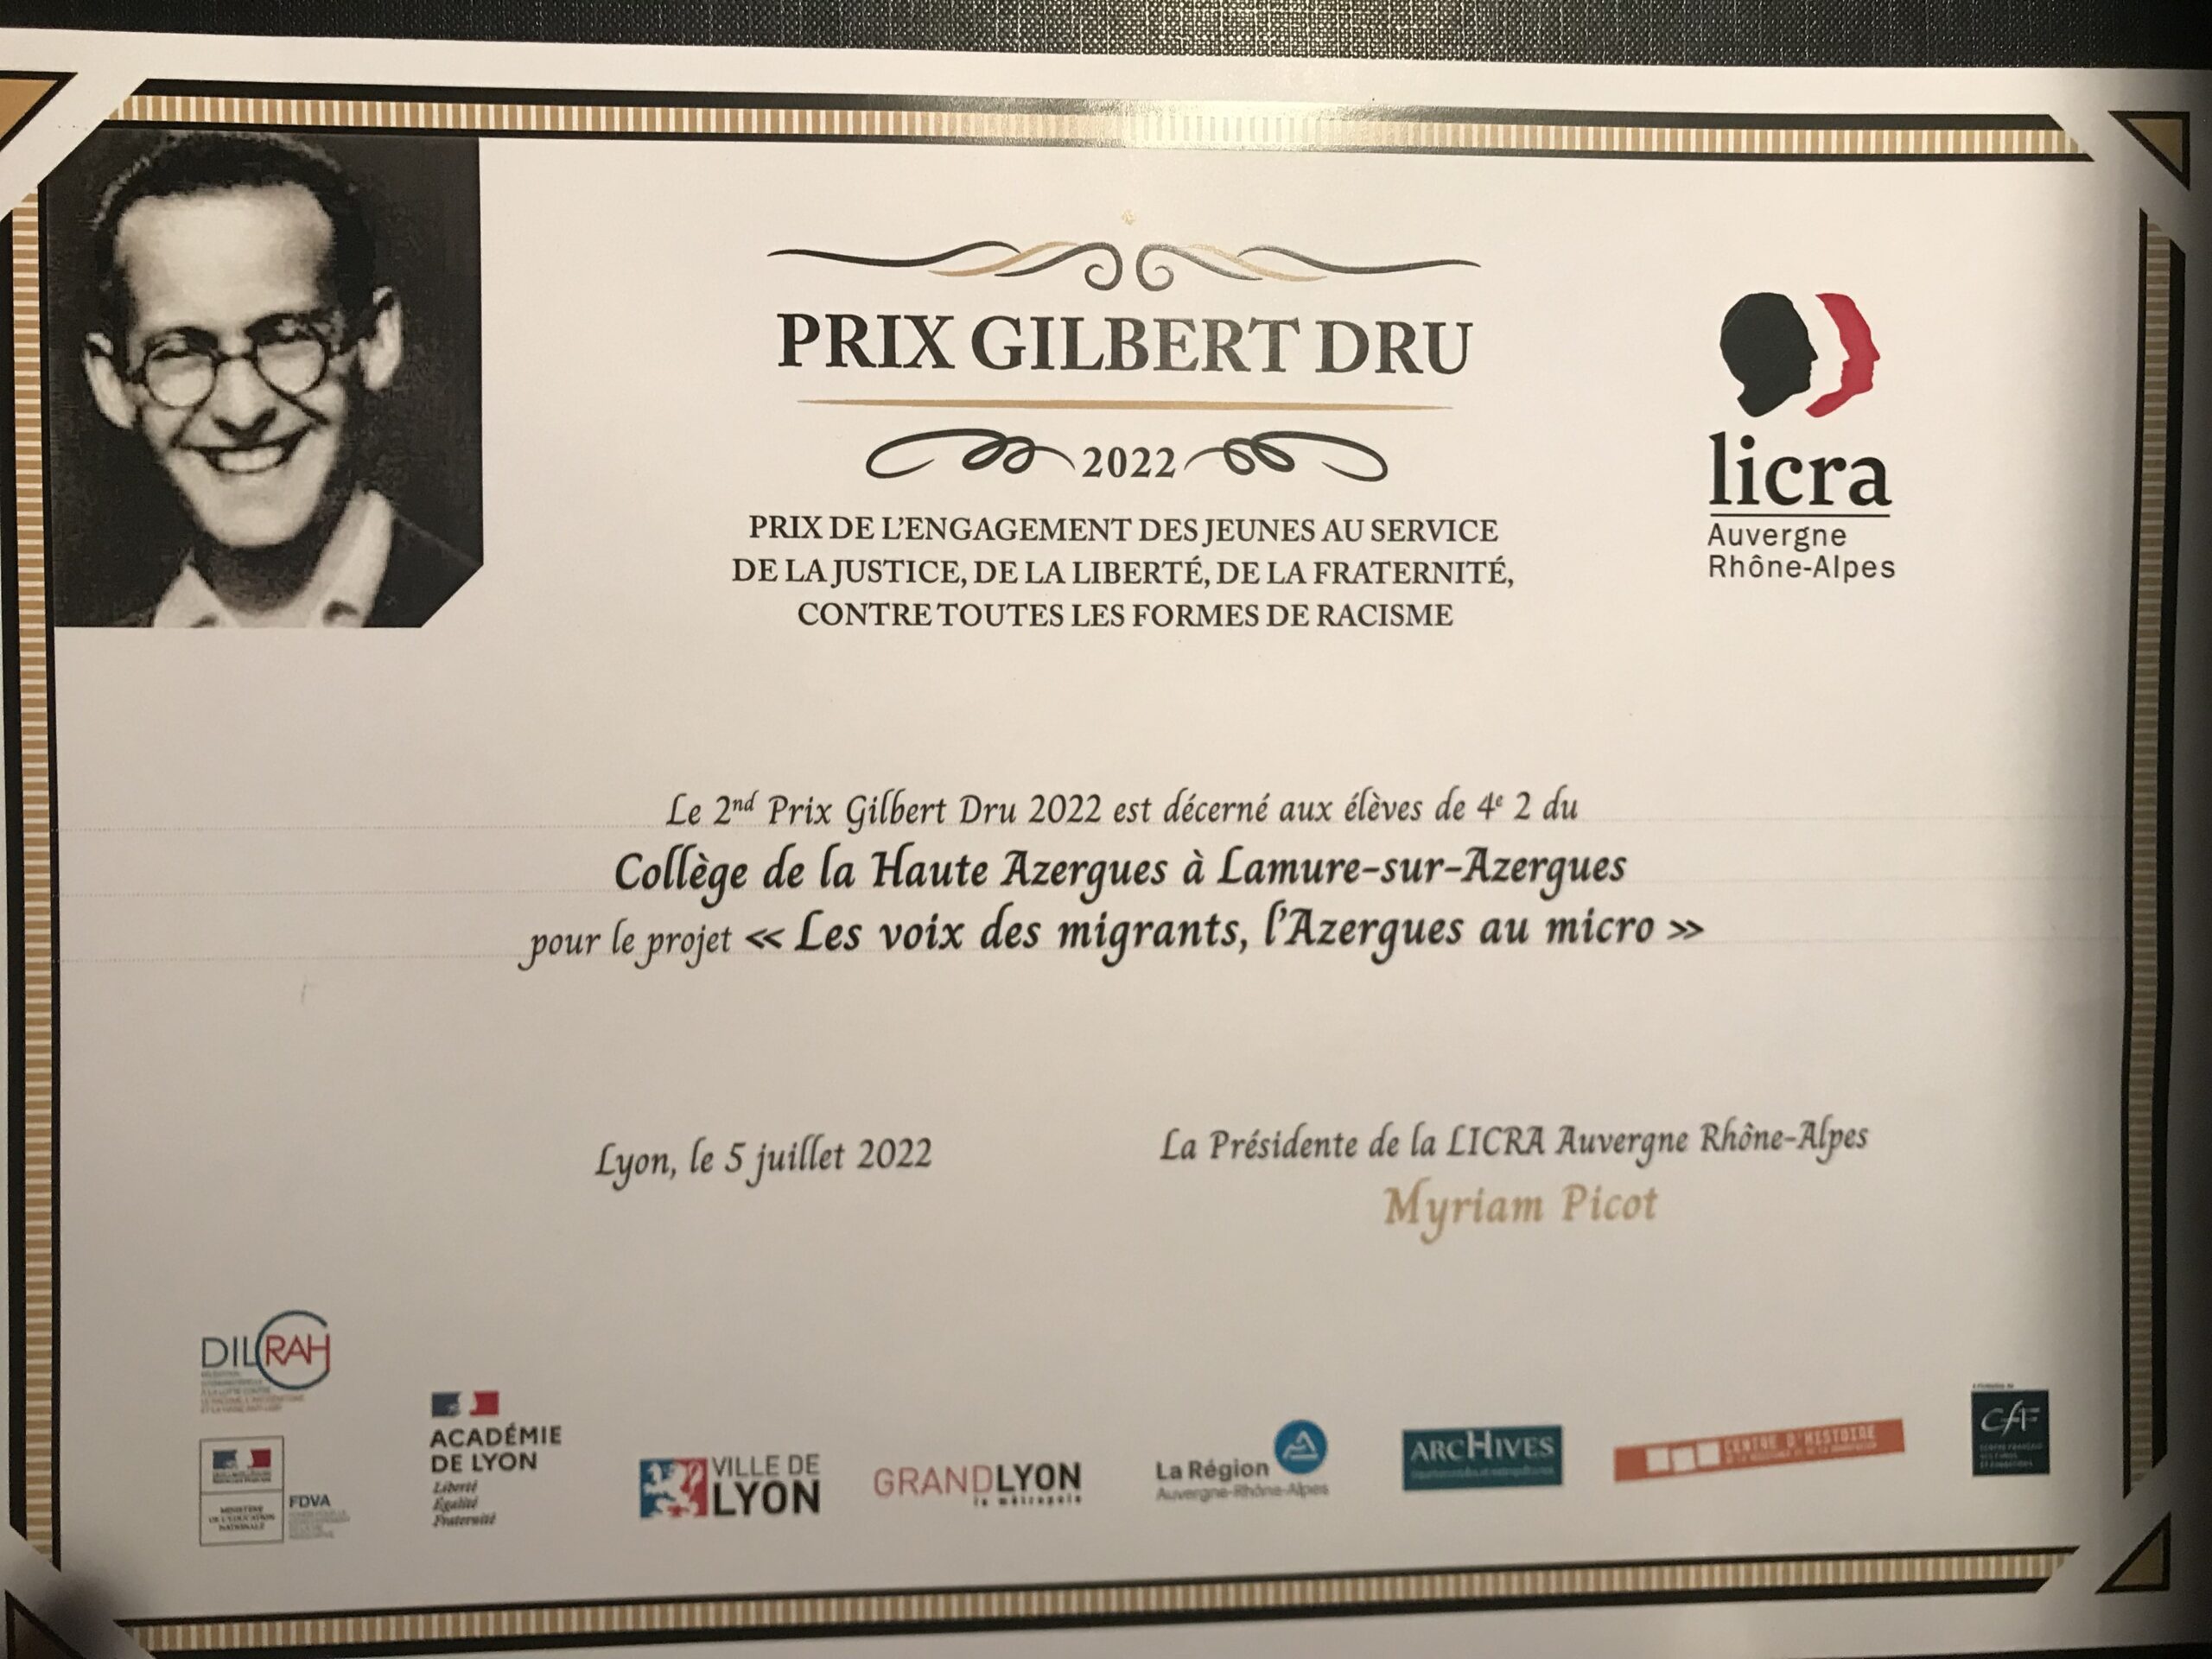 LICRA Auvergne-Rhône-Alpes : Prix Gilbert Dru. Cérémonie de remise des prix le 5 juillet 2022￼